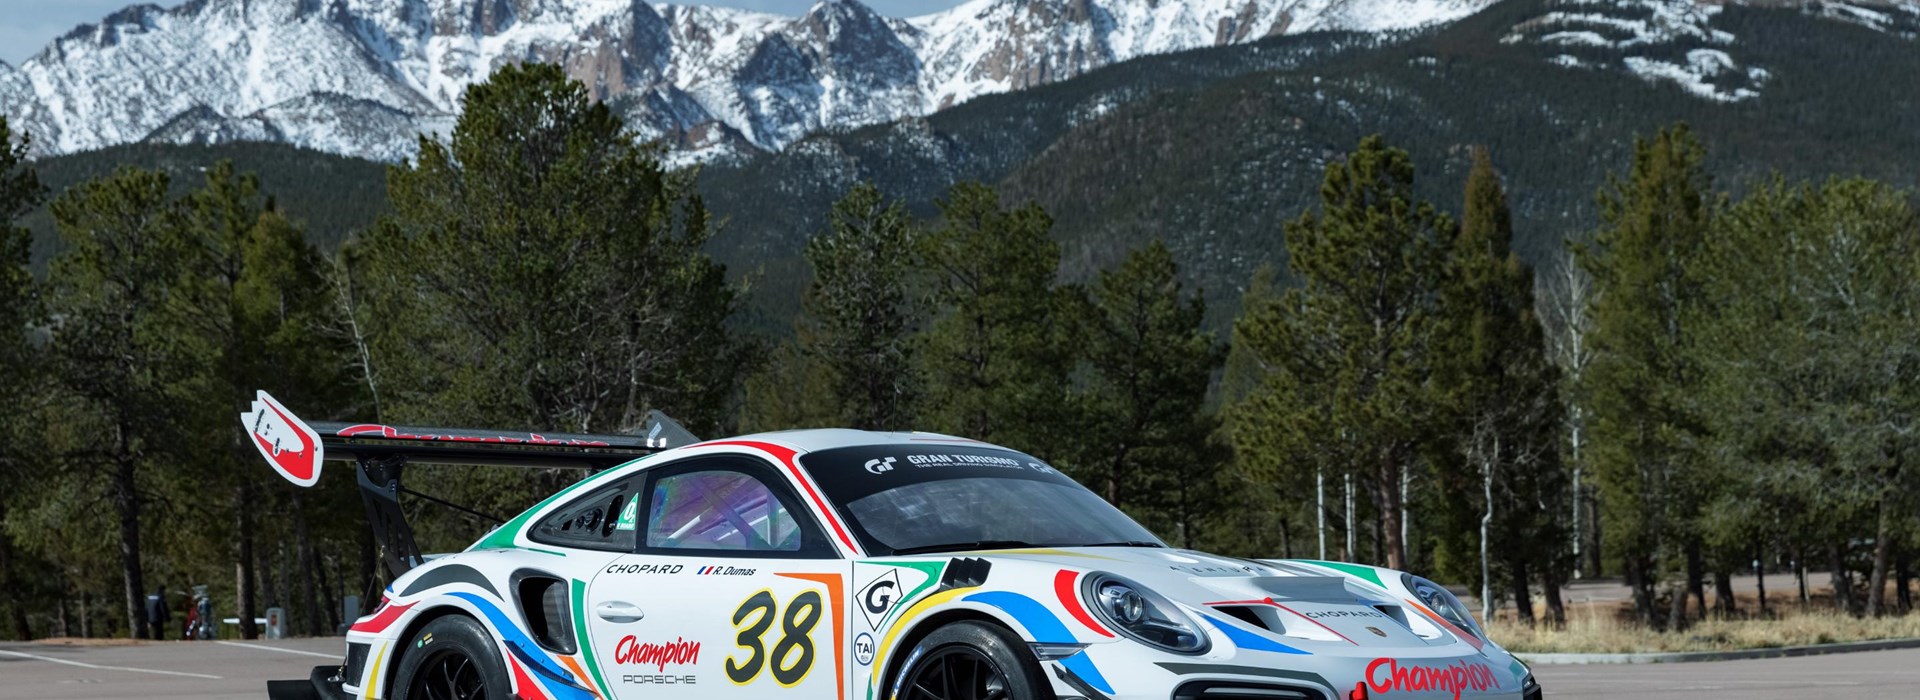 911 Porsche GT2 RS Clubsport 